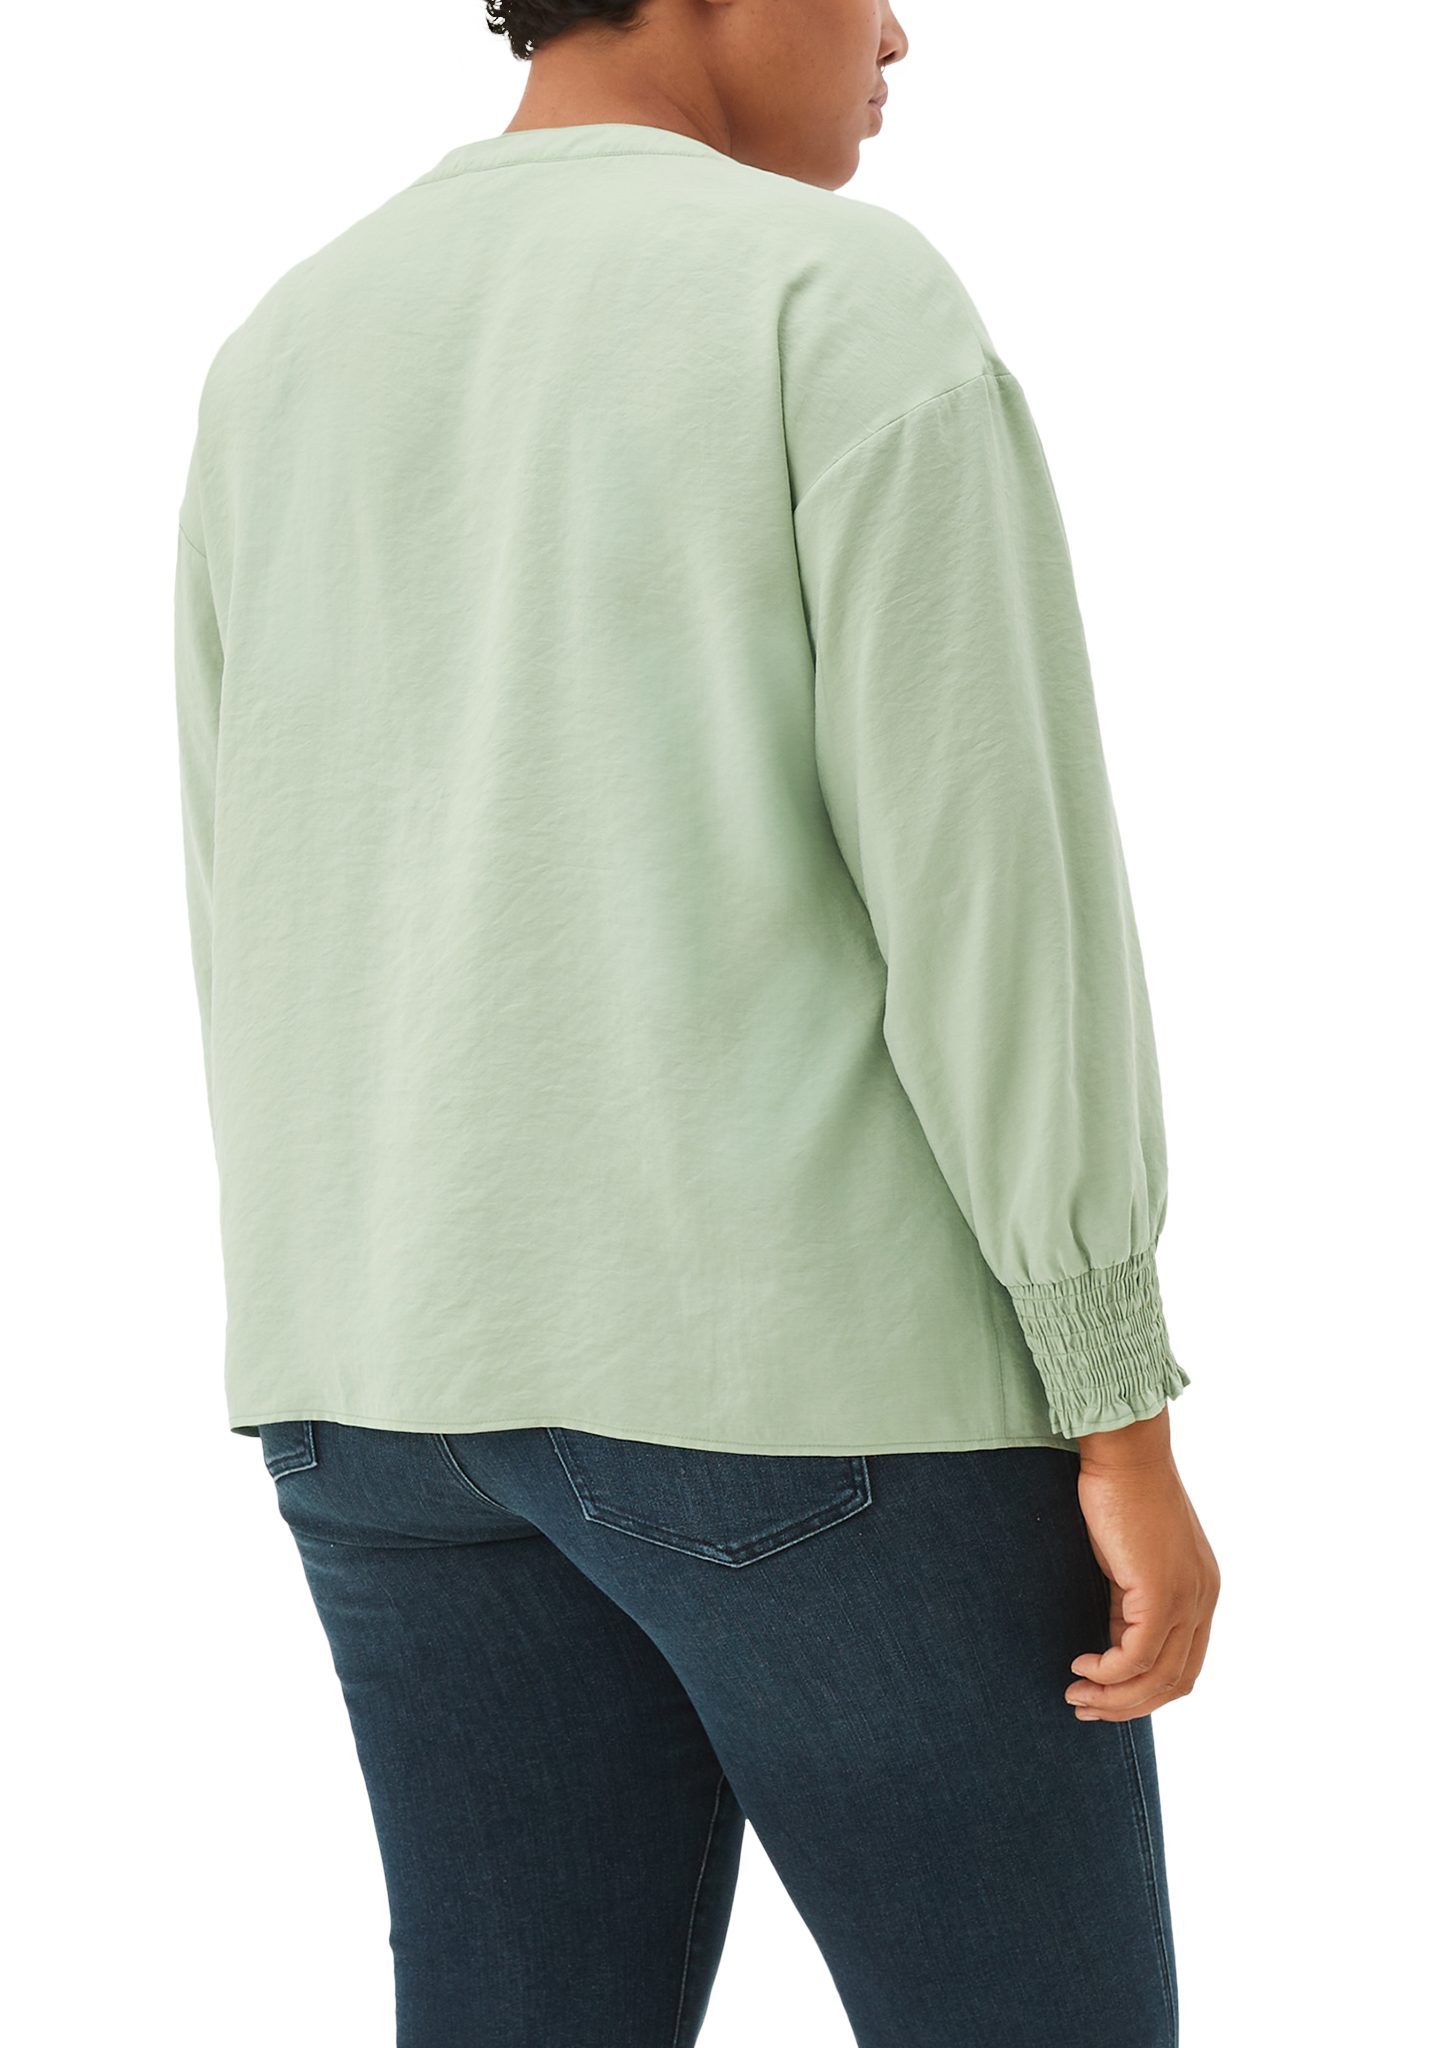 Langarmbluse Bluse TRIANGLE Crinkle-Optik salbeigrün in